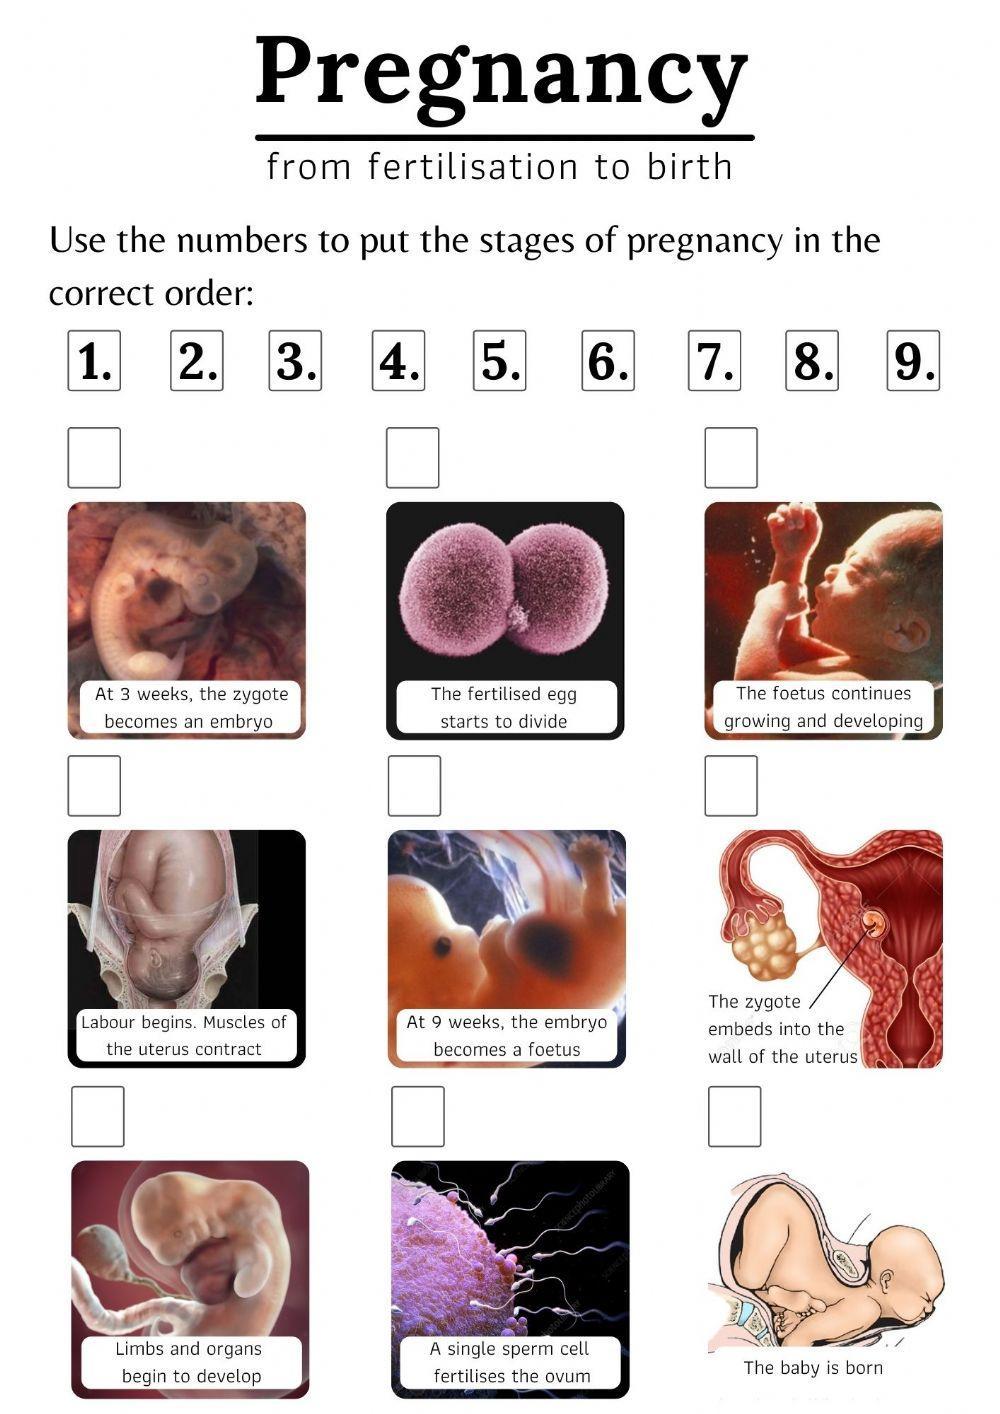 Pregnancy: from fertilisation to birth